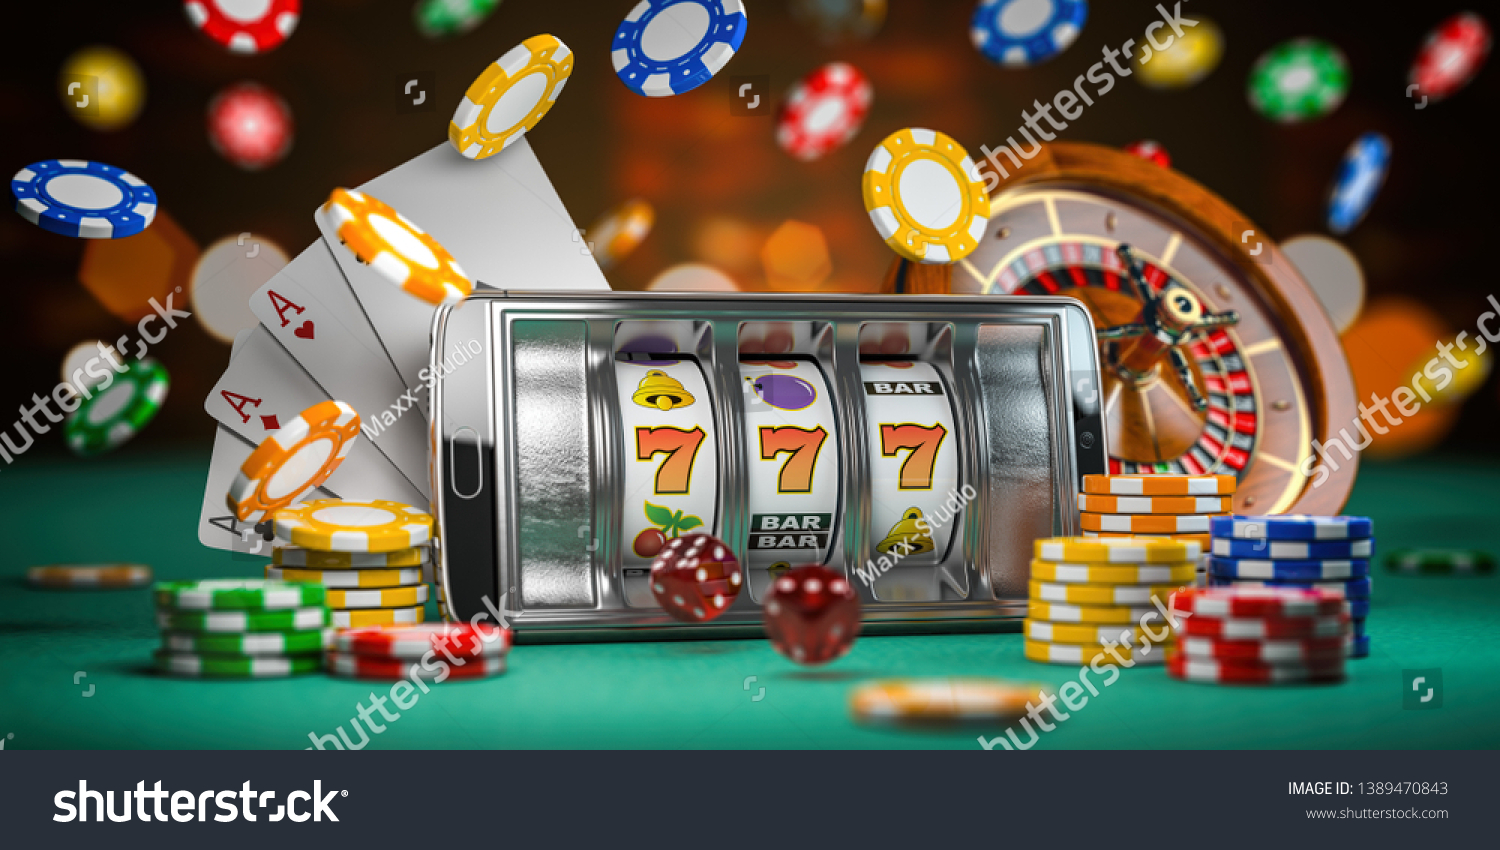 Online casino slots machine игровые казино слоты игровые автоматы бесплатно без регистрации